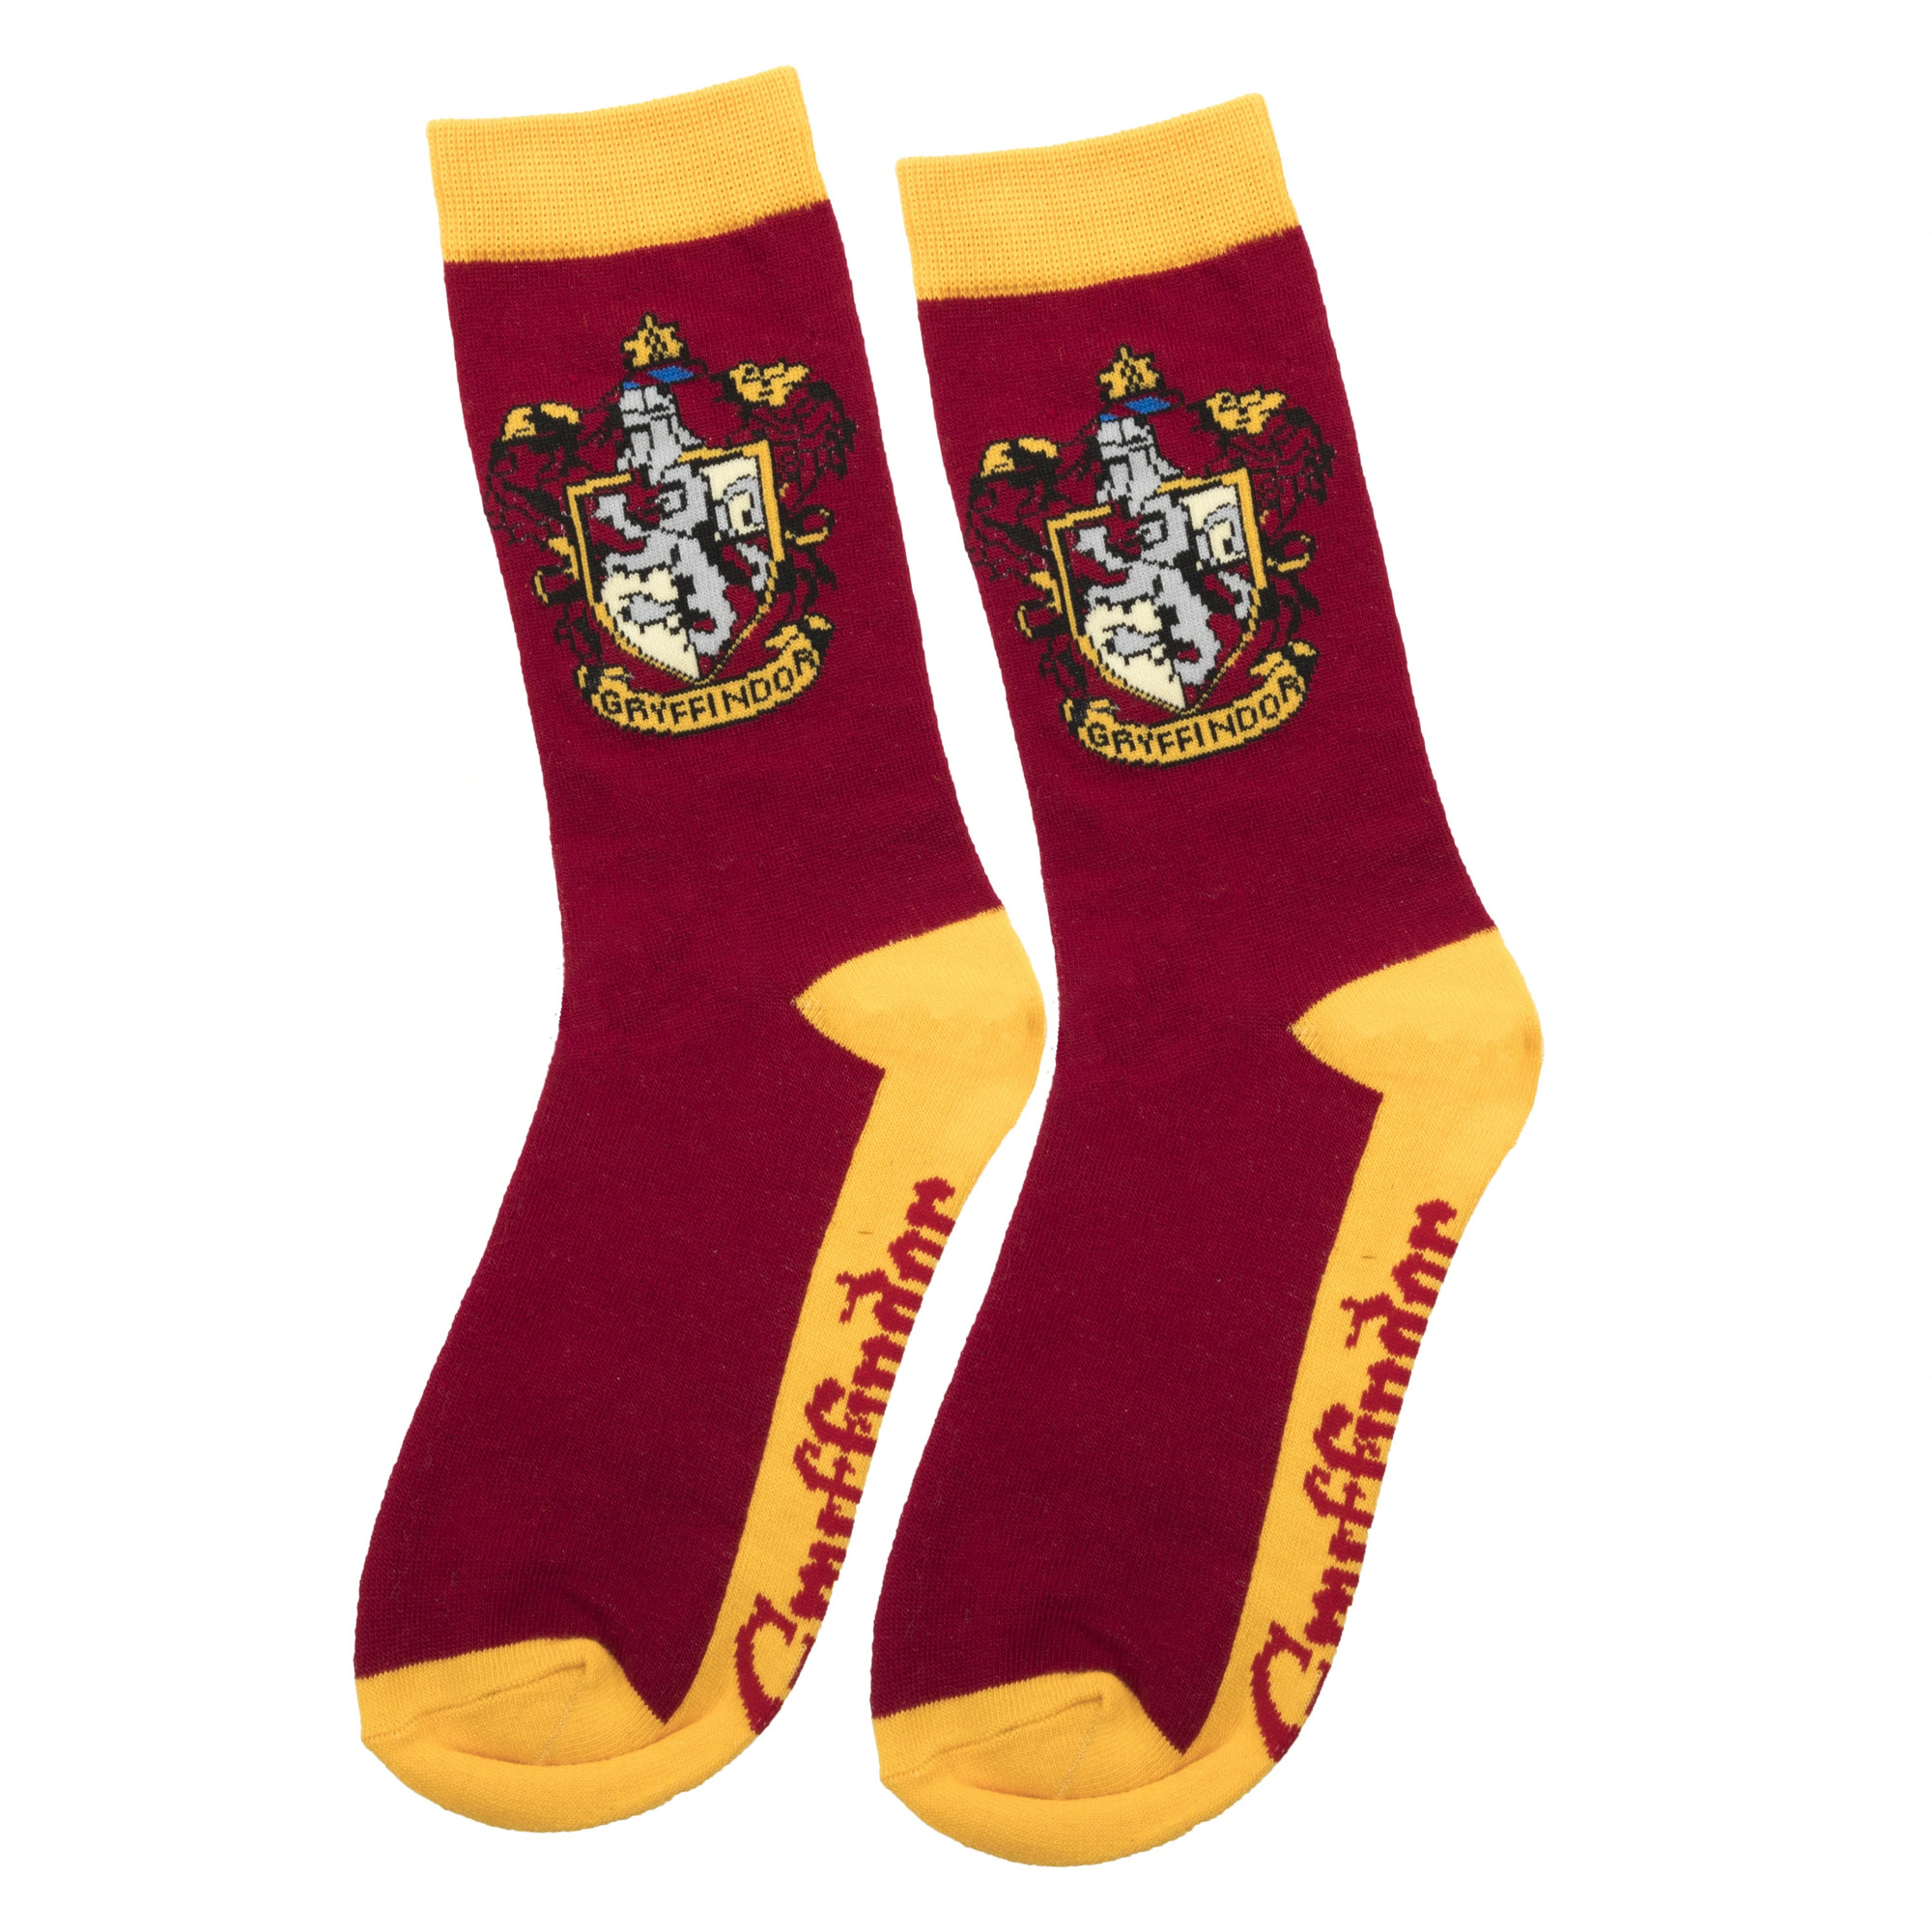 Confezione da 5 paia di calze Harry Potter Colore multicolore